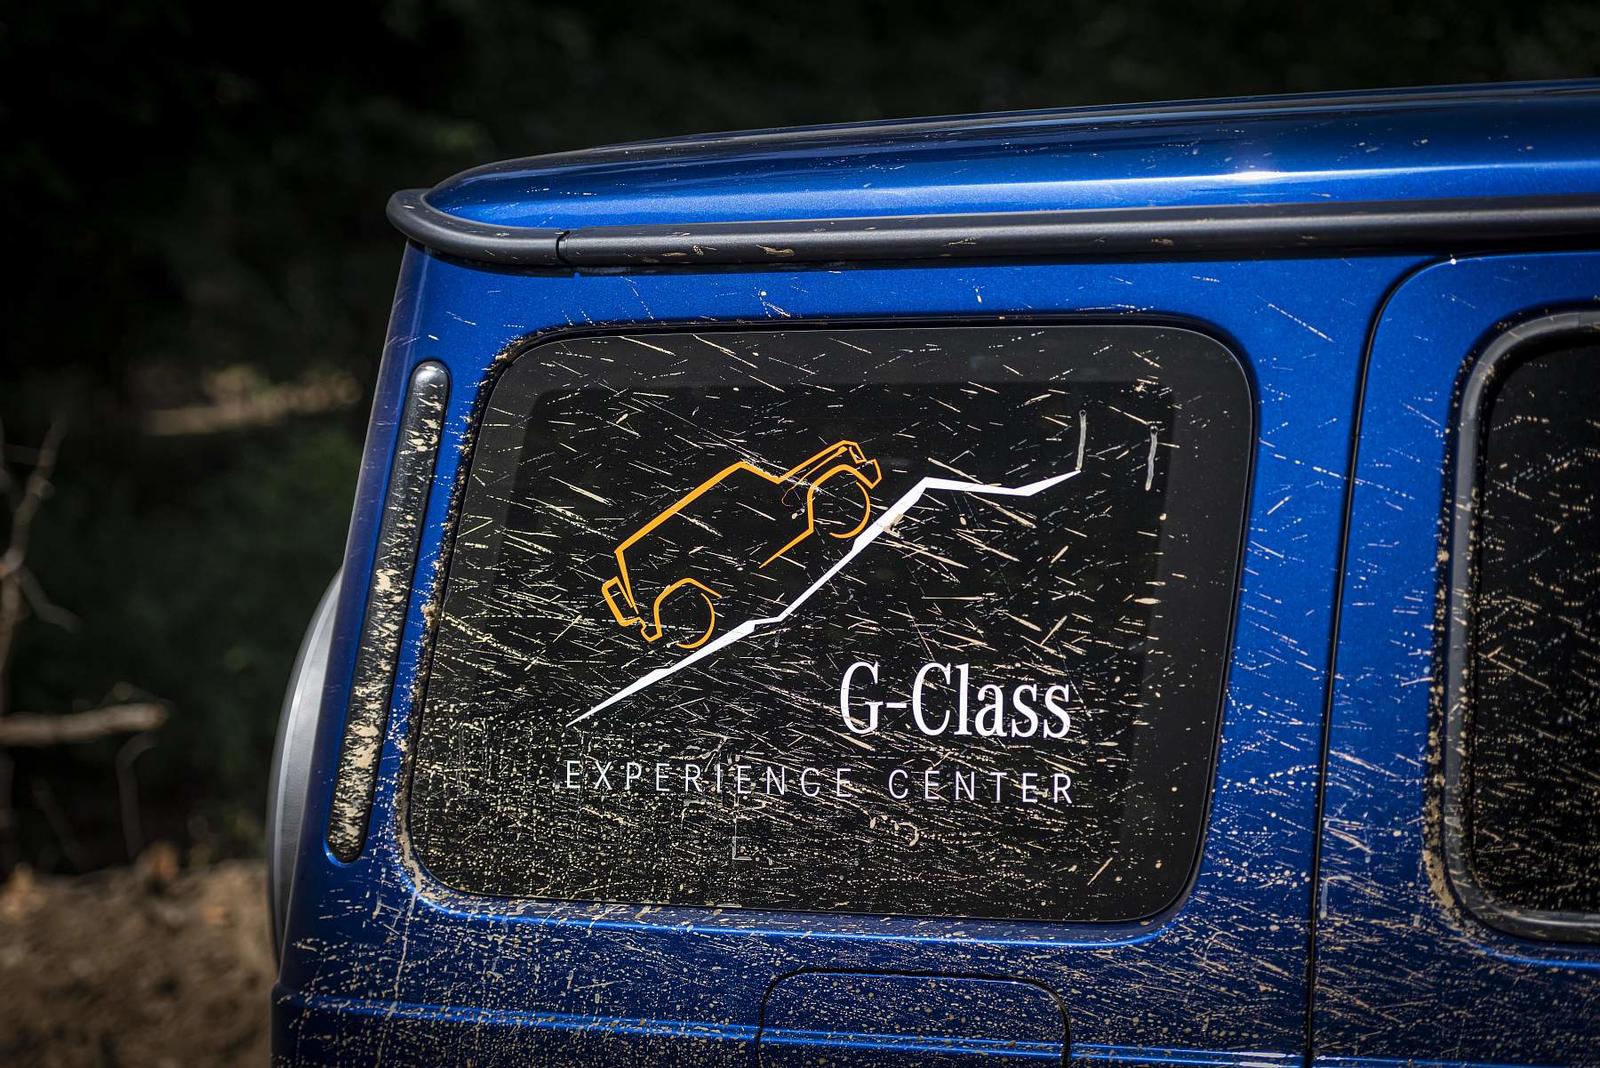 Mercedes-Benz 40 years of the G-Class, Graz 2019

Mercedes-Benz 40 years of the G-Class, Graz 2019